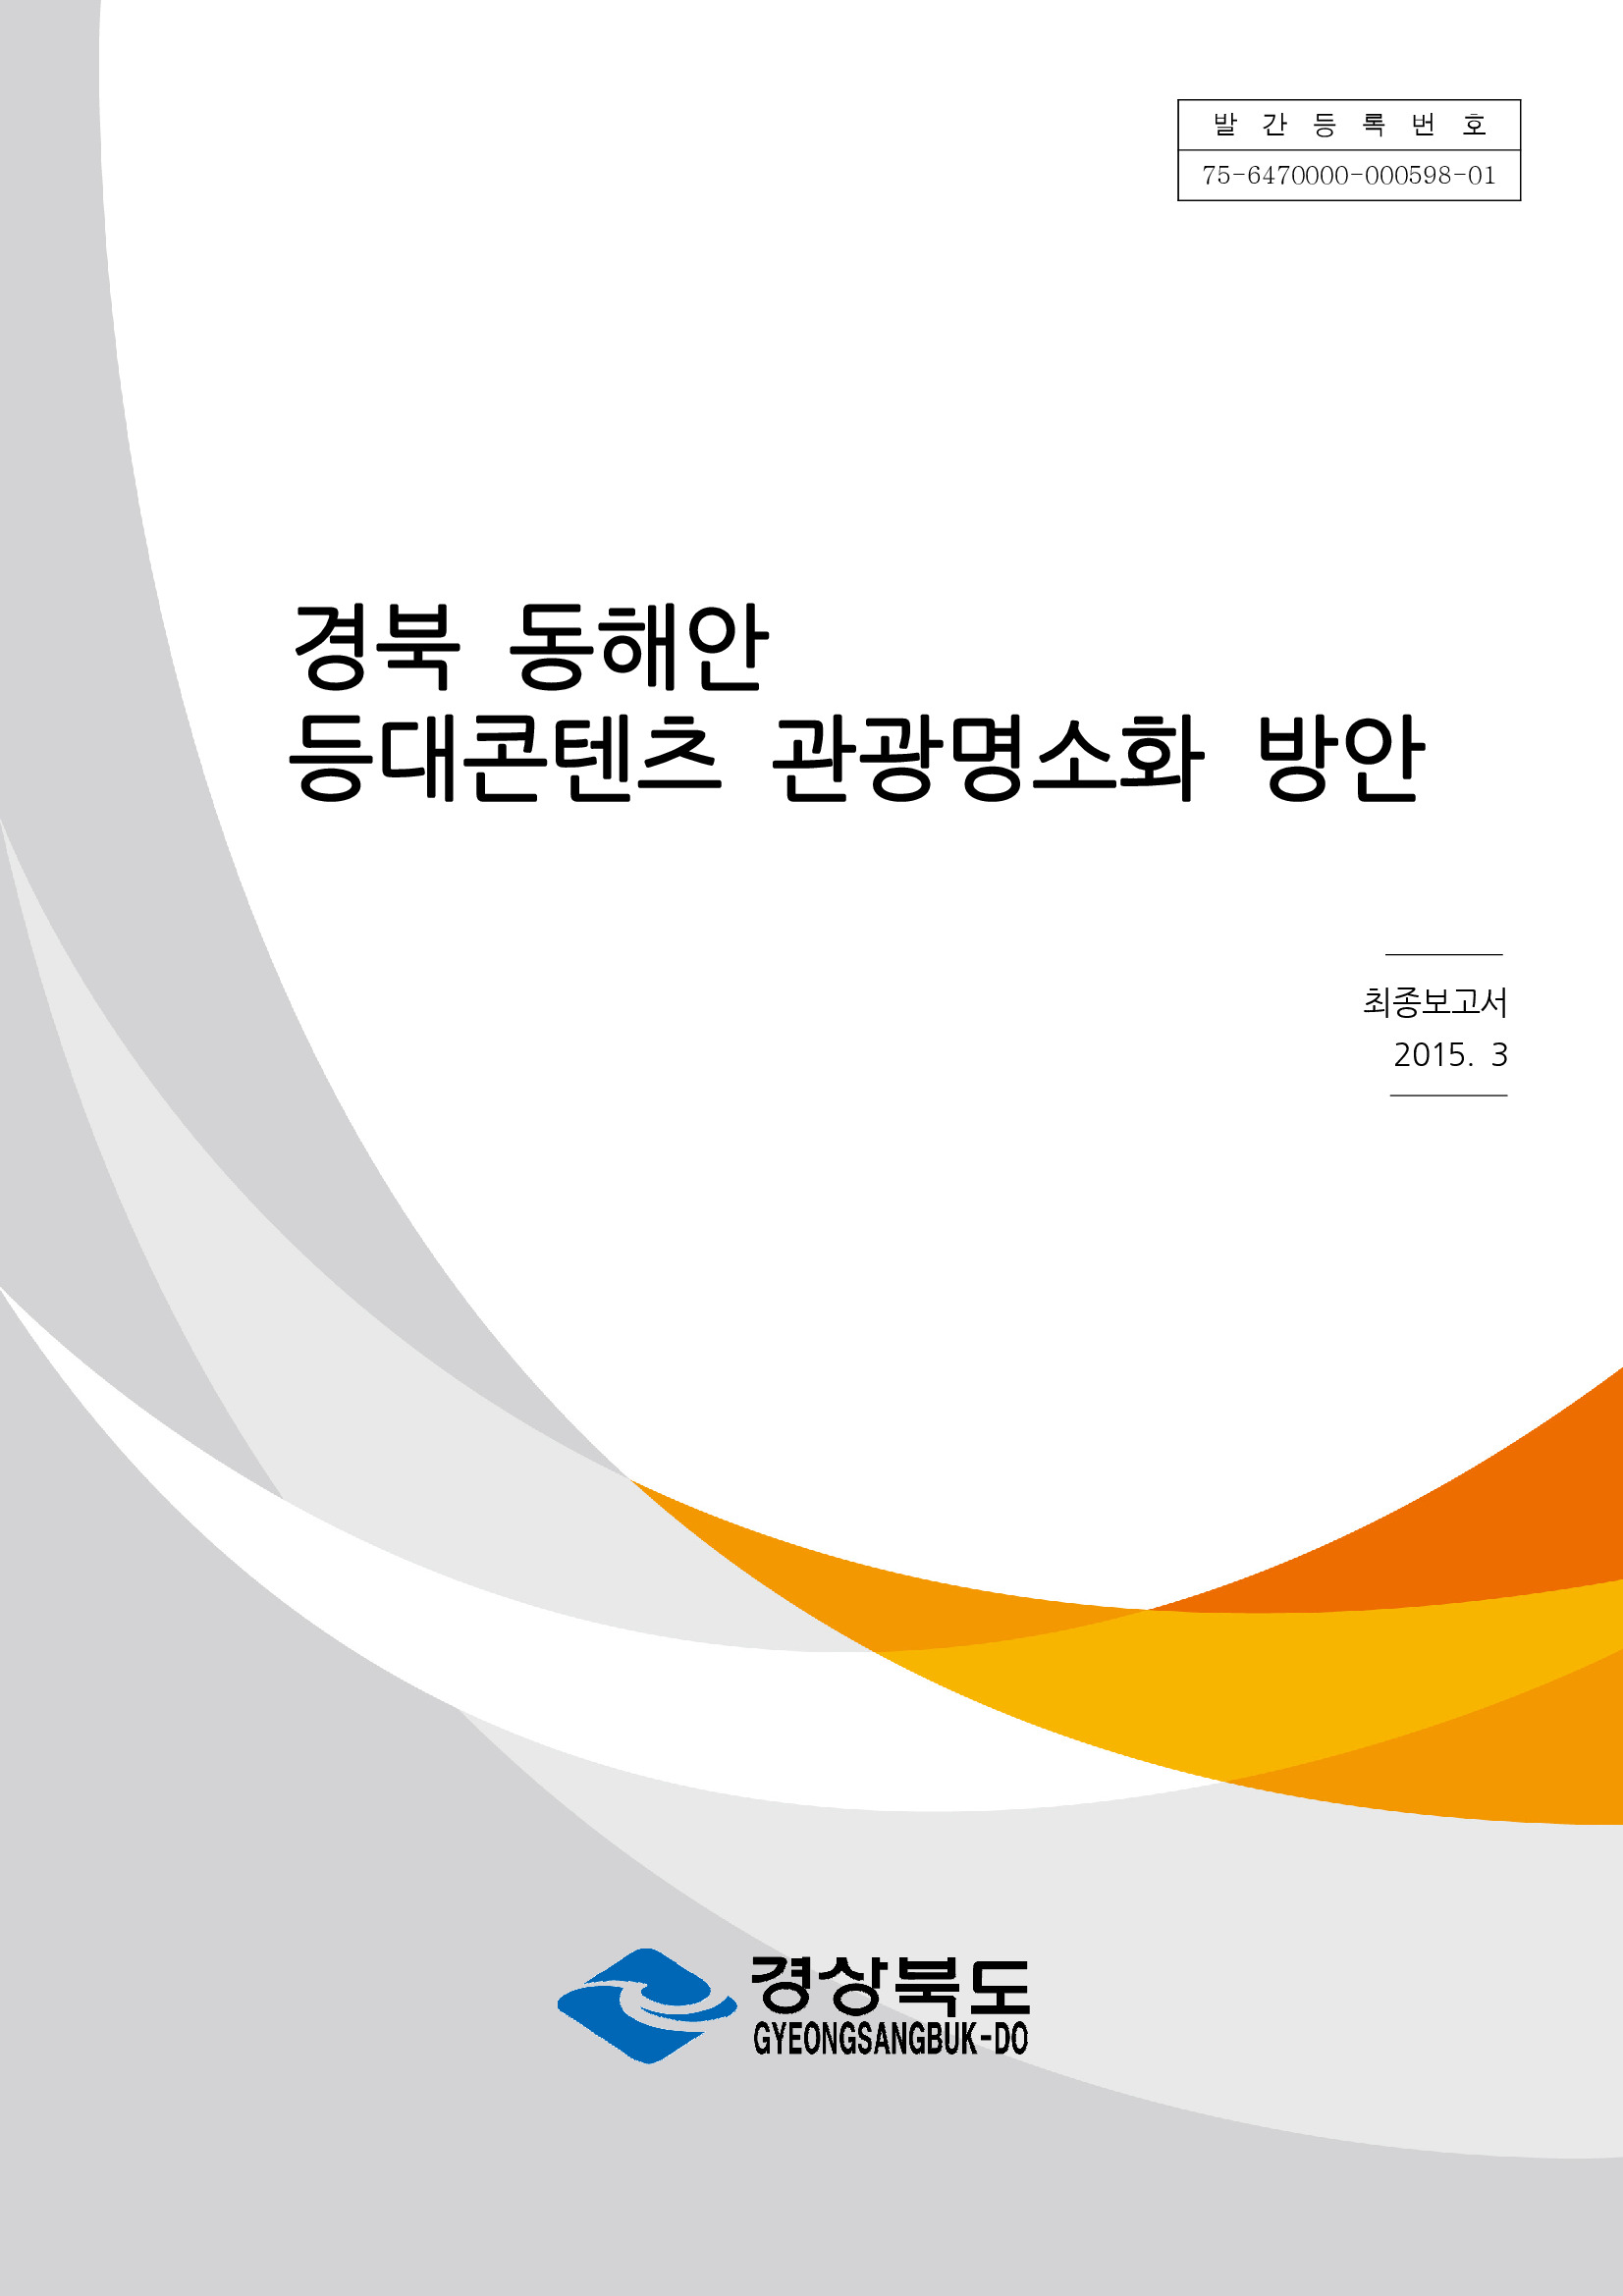 경북 동해안 등대콘텐츠 관광명소화 방안 연구용역